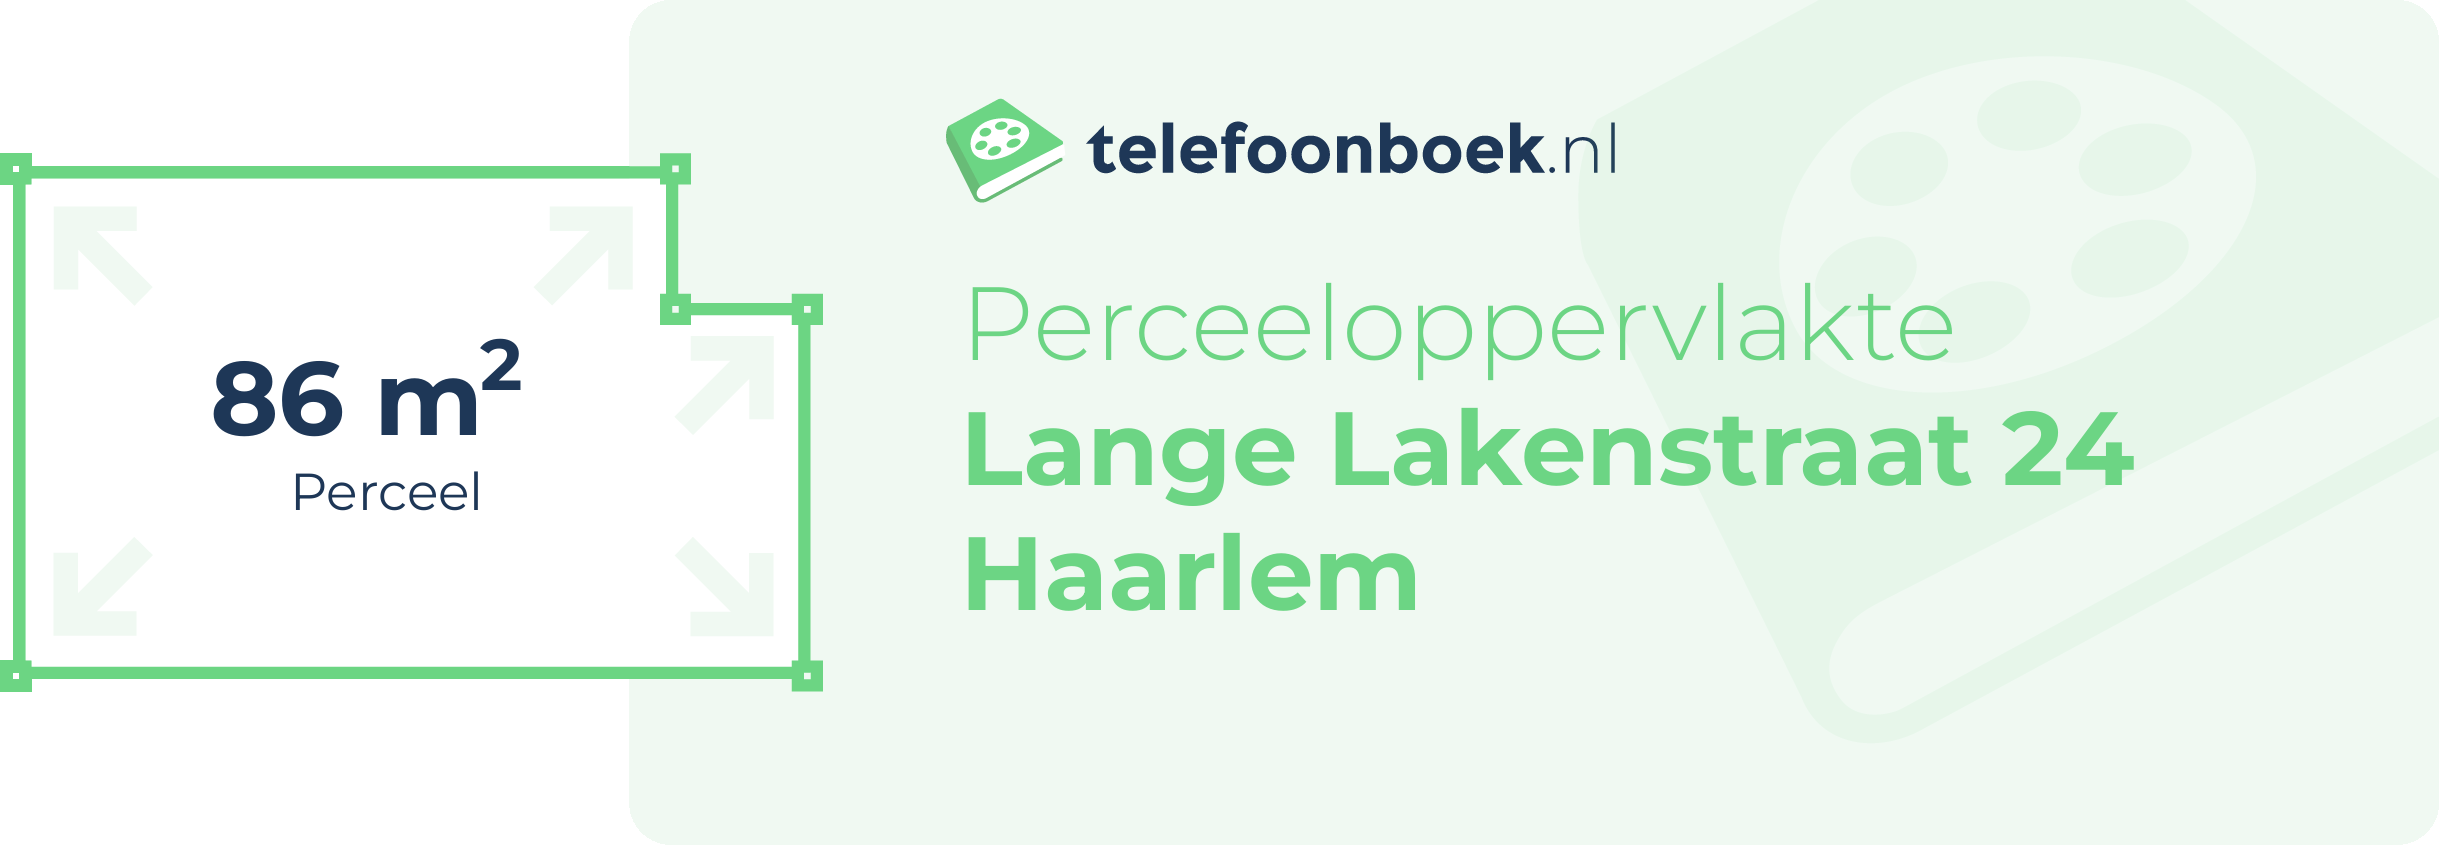 Perceeloppervlakte Lange Lakenstraat 24 Haarlem